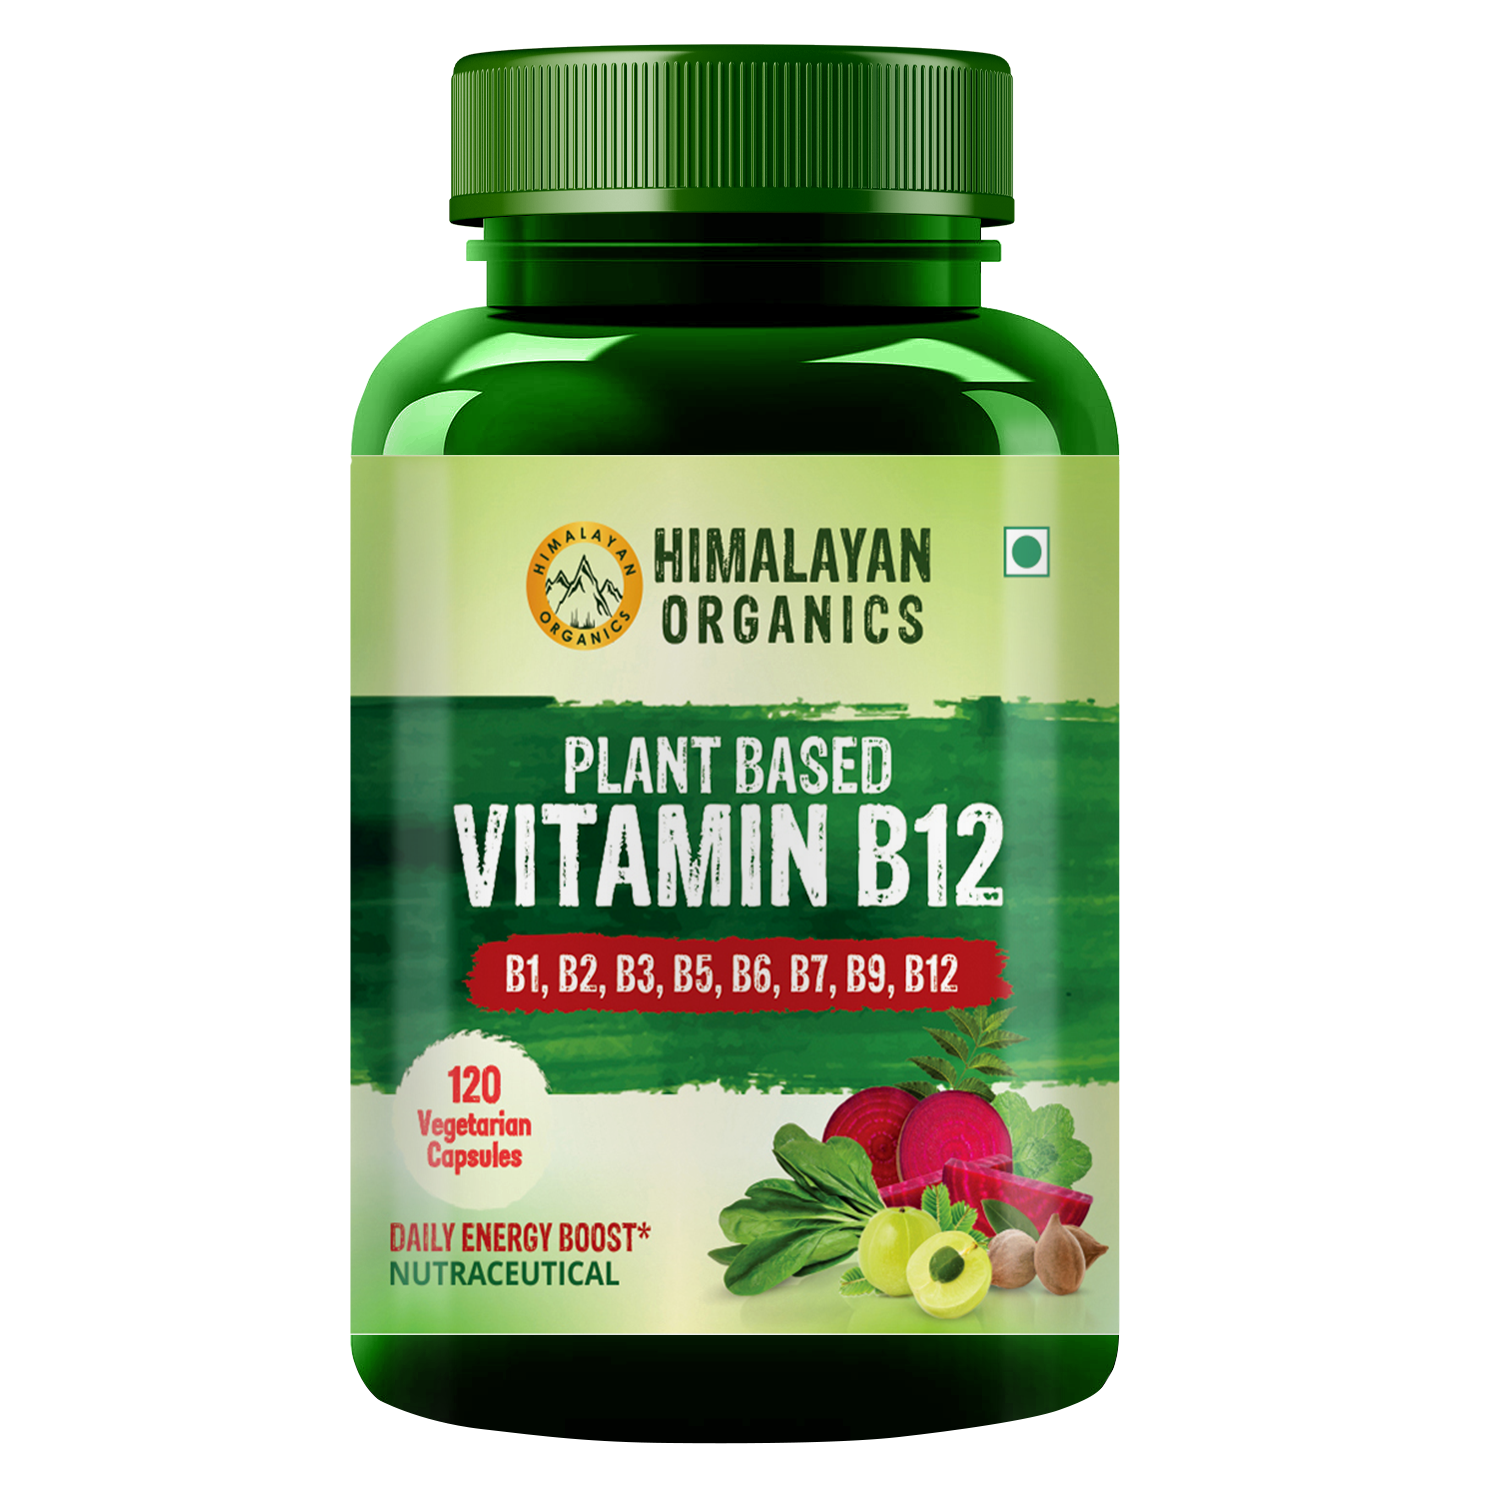 GREENFOOD best vitamin b12 supplement india